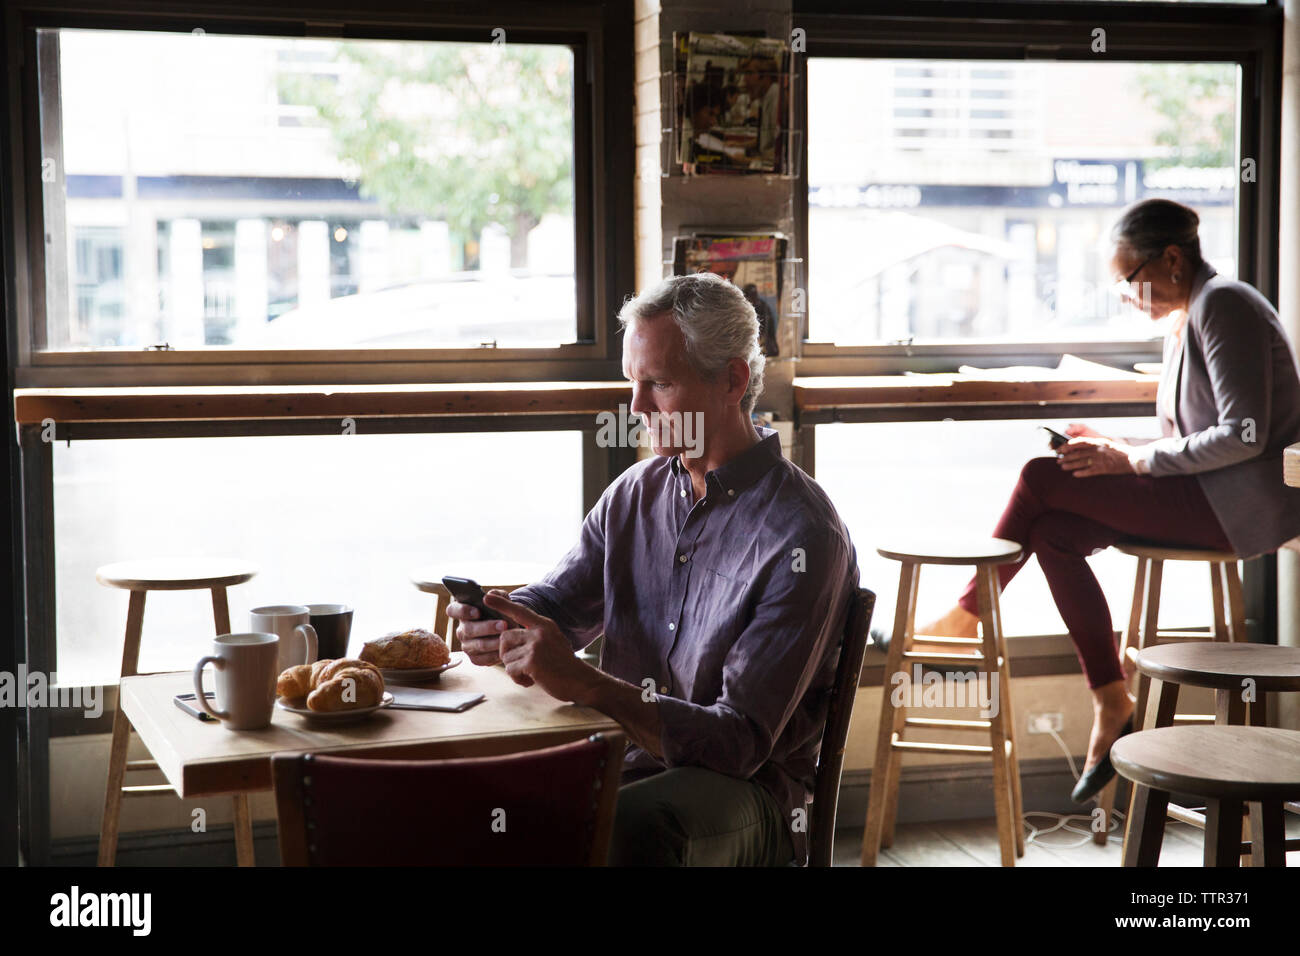 Les clients utilisant phone while sitting at table par windows dans cafe Banque D'Images